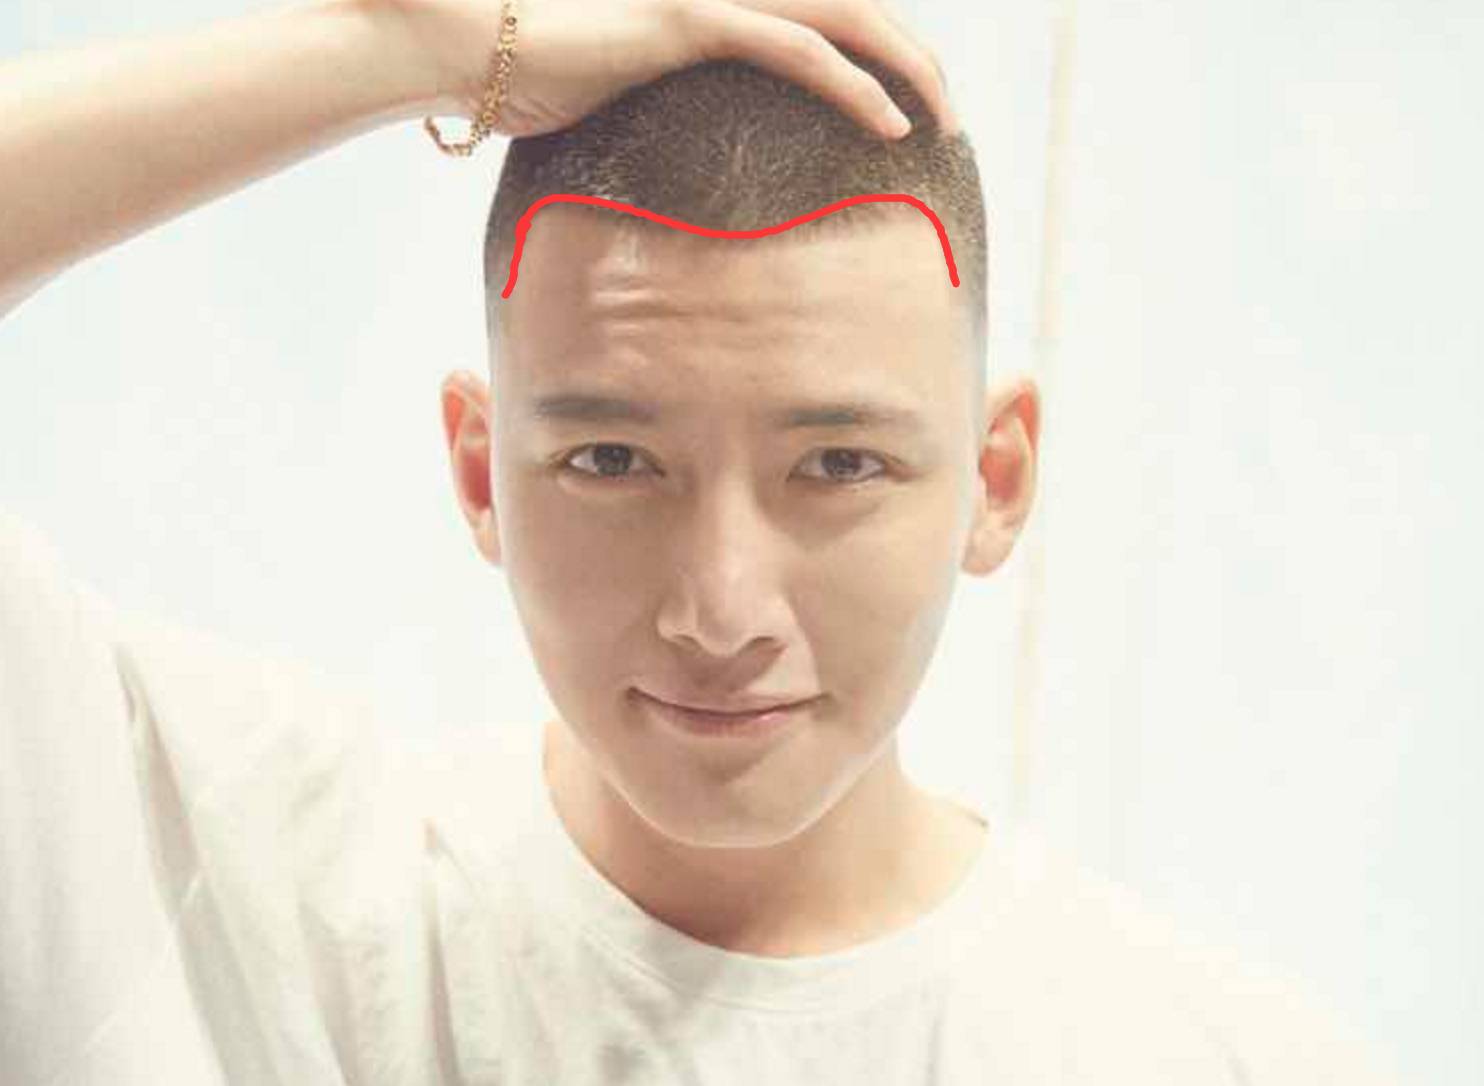 发型能起到修饰脸型和发际线的作用,唯有寸头能彻彻底底暴露一个男人